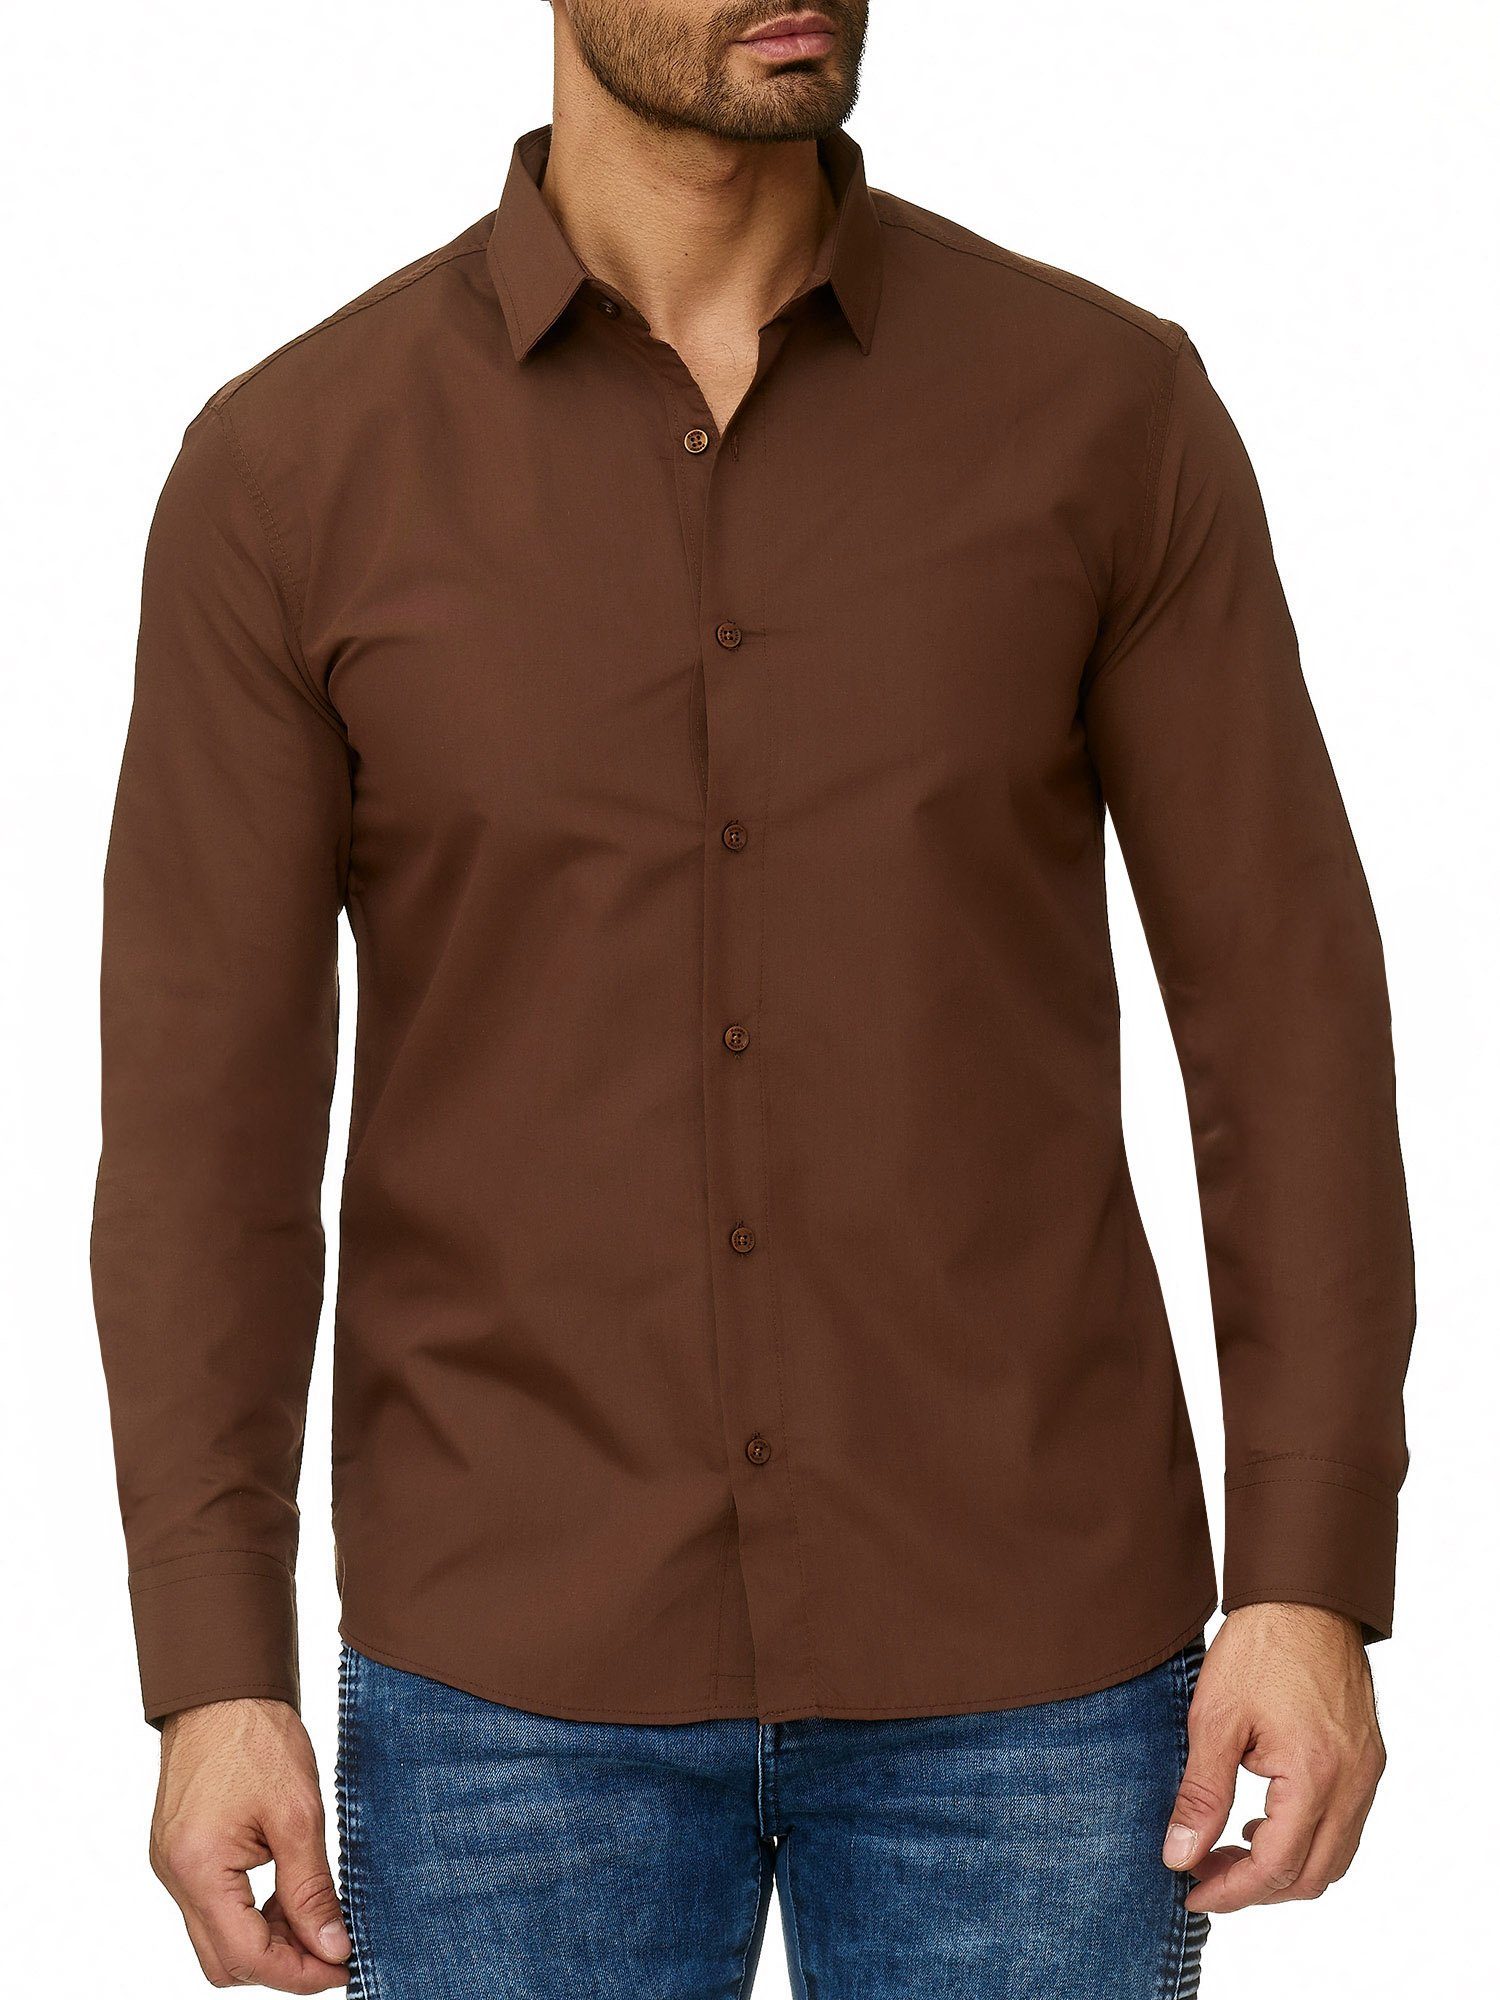 Braune Hemden für Herren online kaufen | OTTO